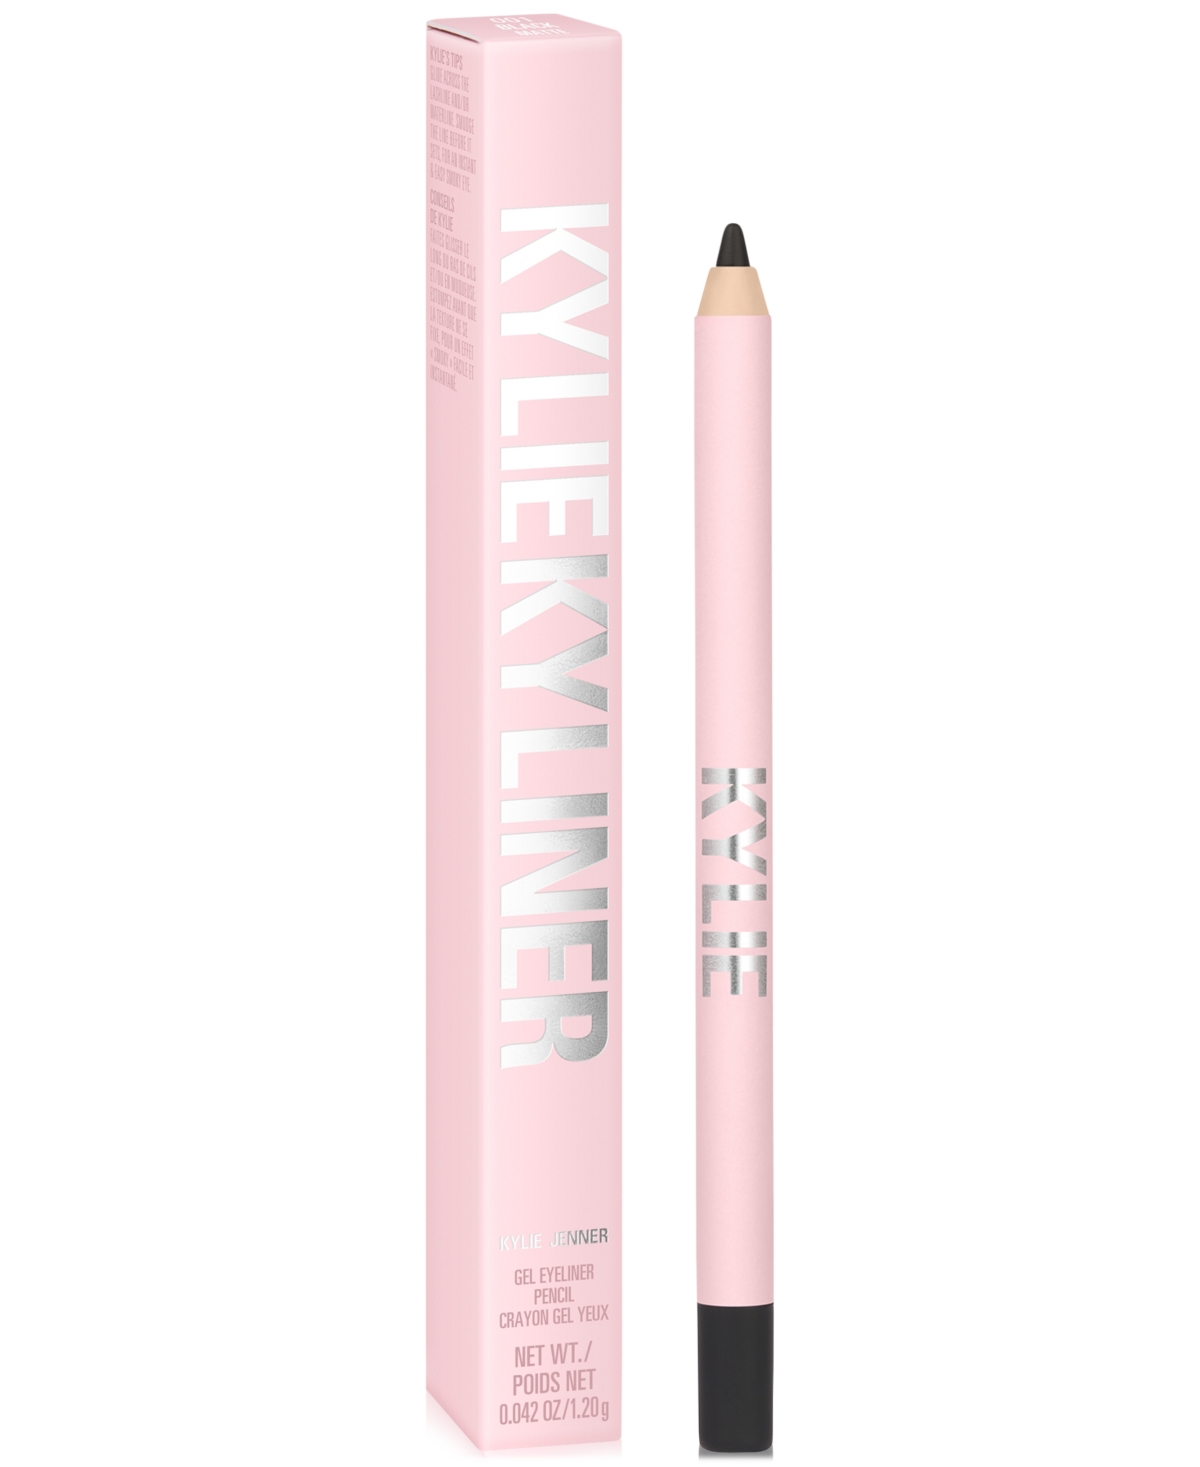 Kylie Cosmetics Kyliner Gel Eyeliner Pencil In Matte Black